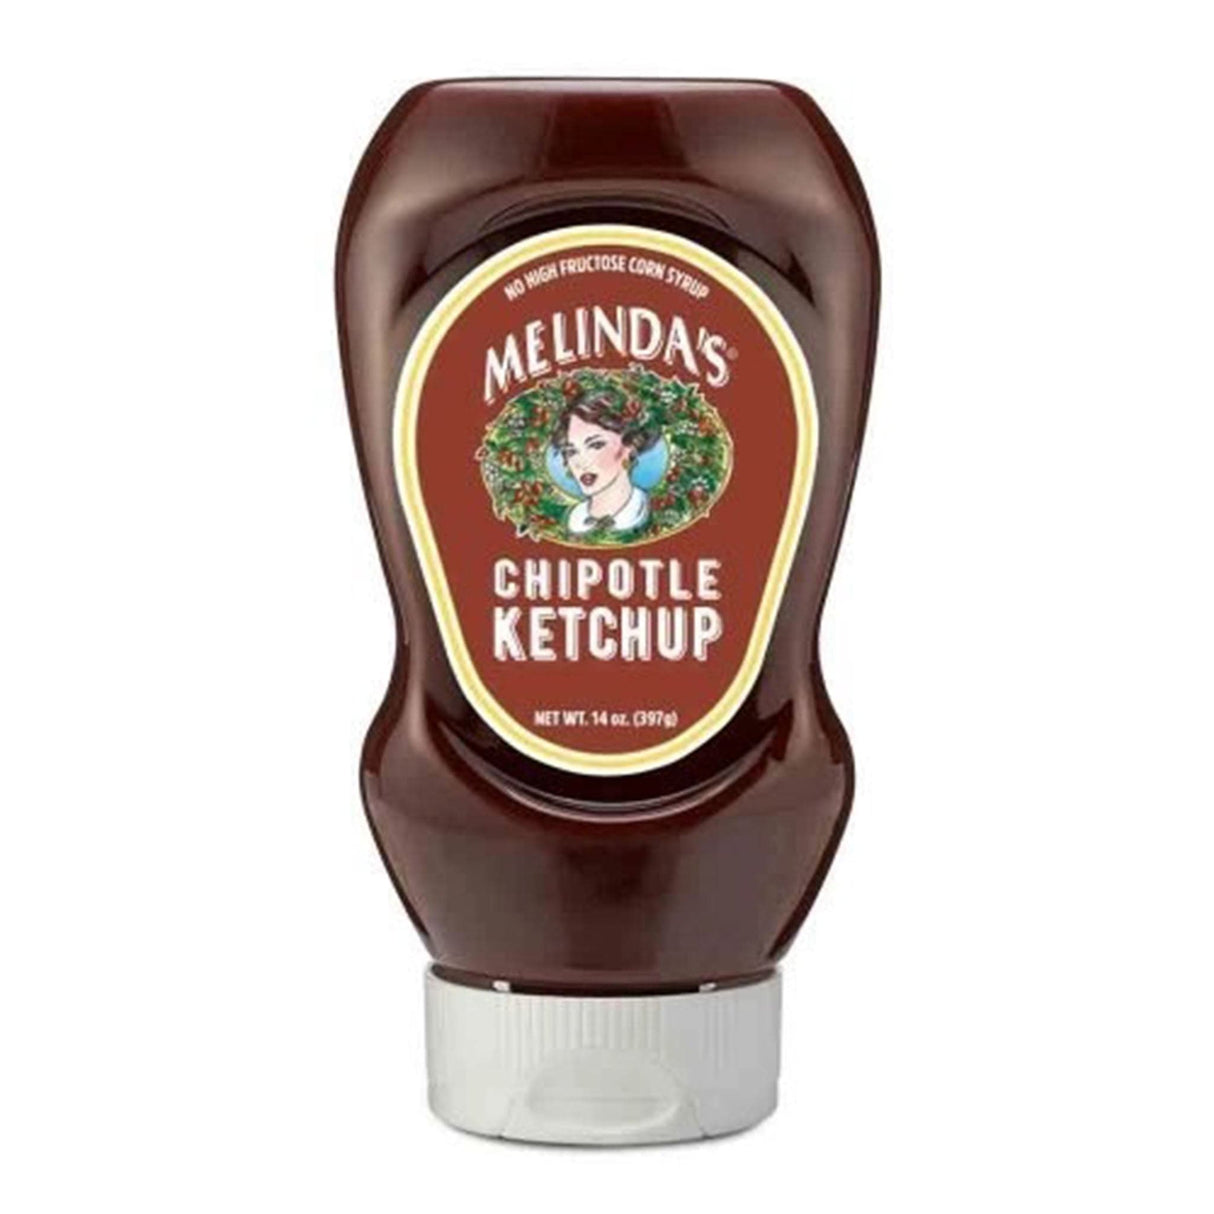 Melinda's Chipotle Ketchup Rich & Smoky